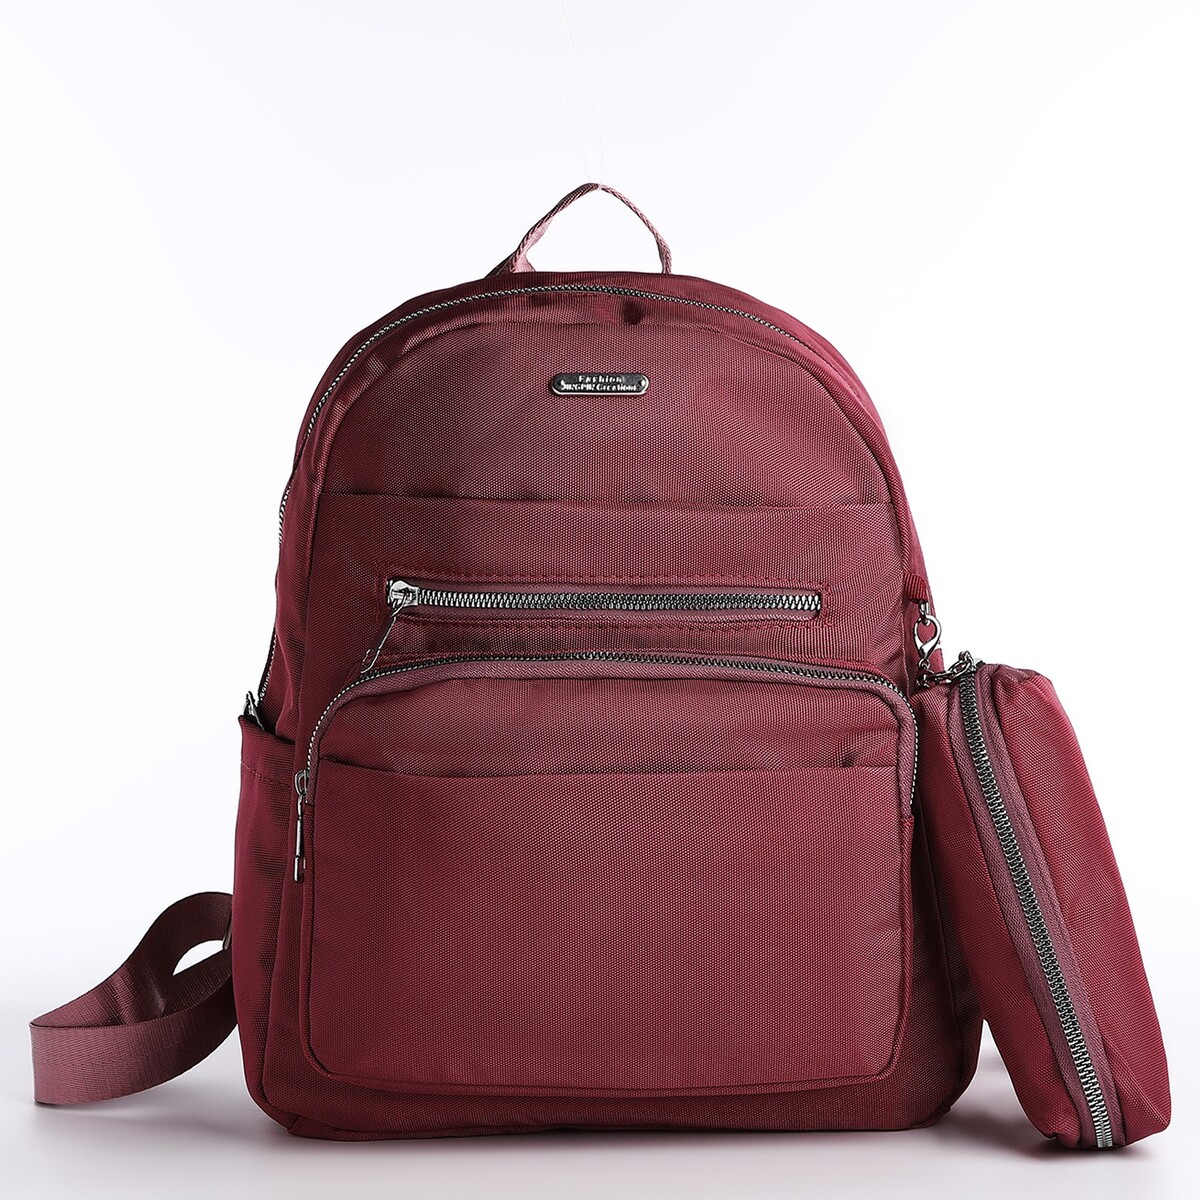 Рюкзак на молнии, 5 наружных карманов, пенал, цвет бордовый рюкзак wenger urban contemporary 605024 14 бордовый 14 л